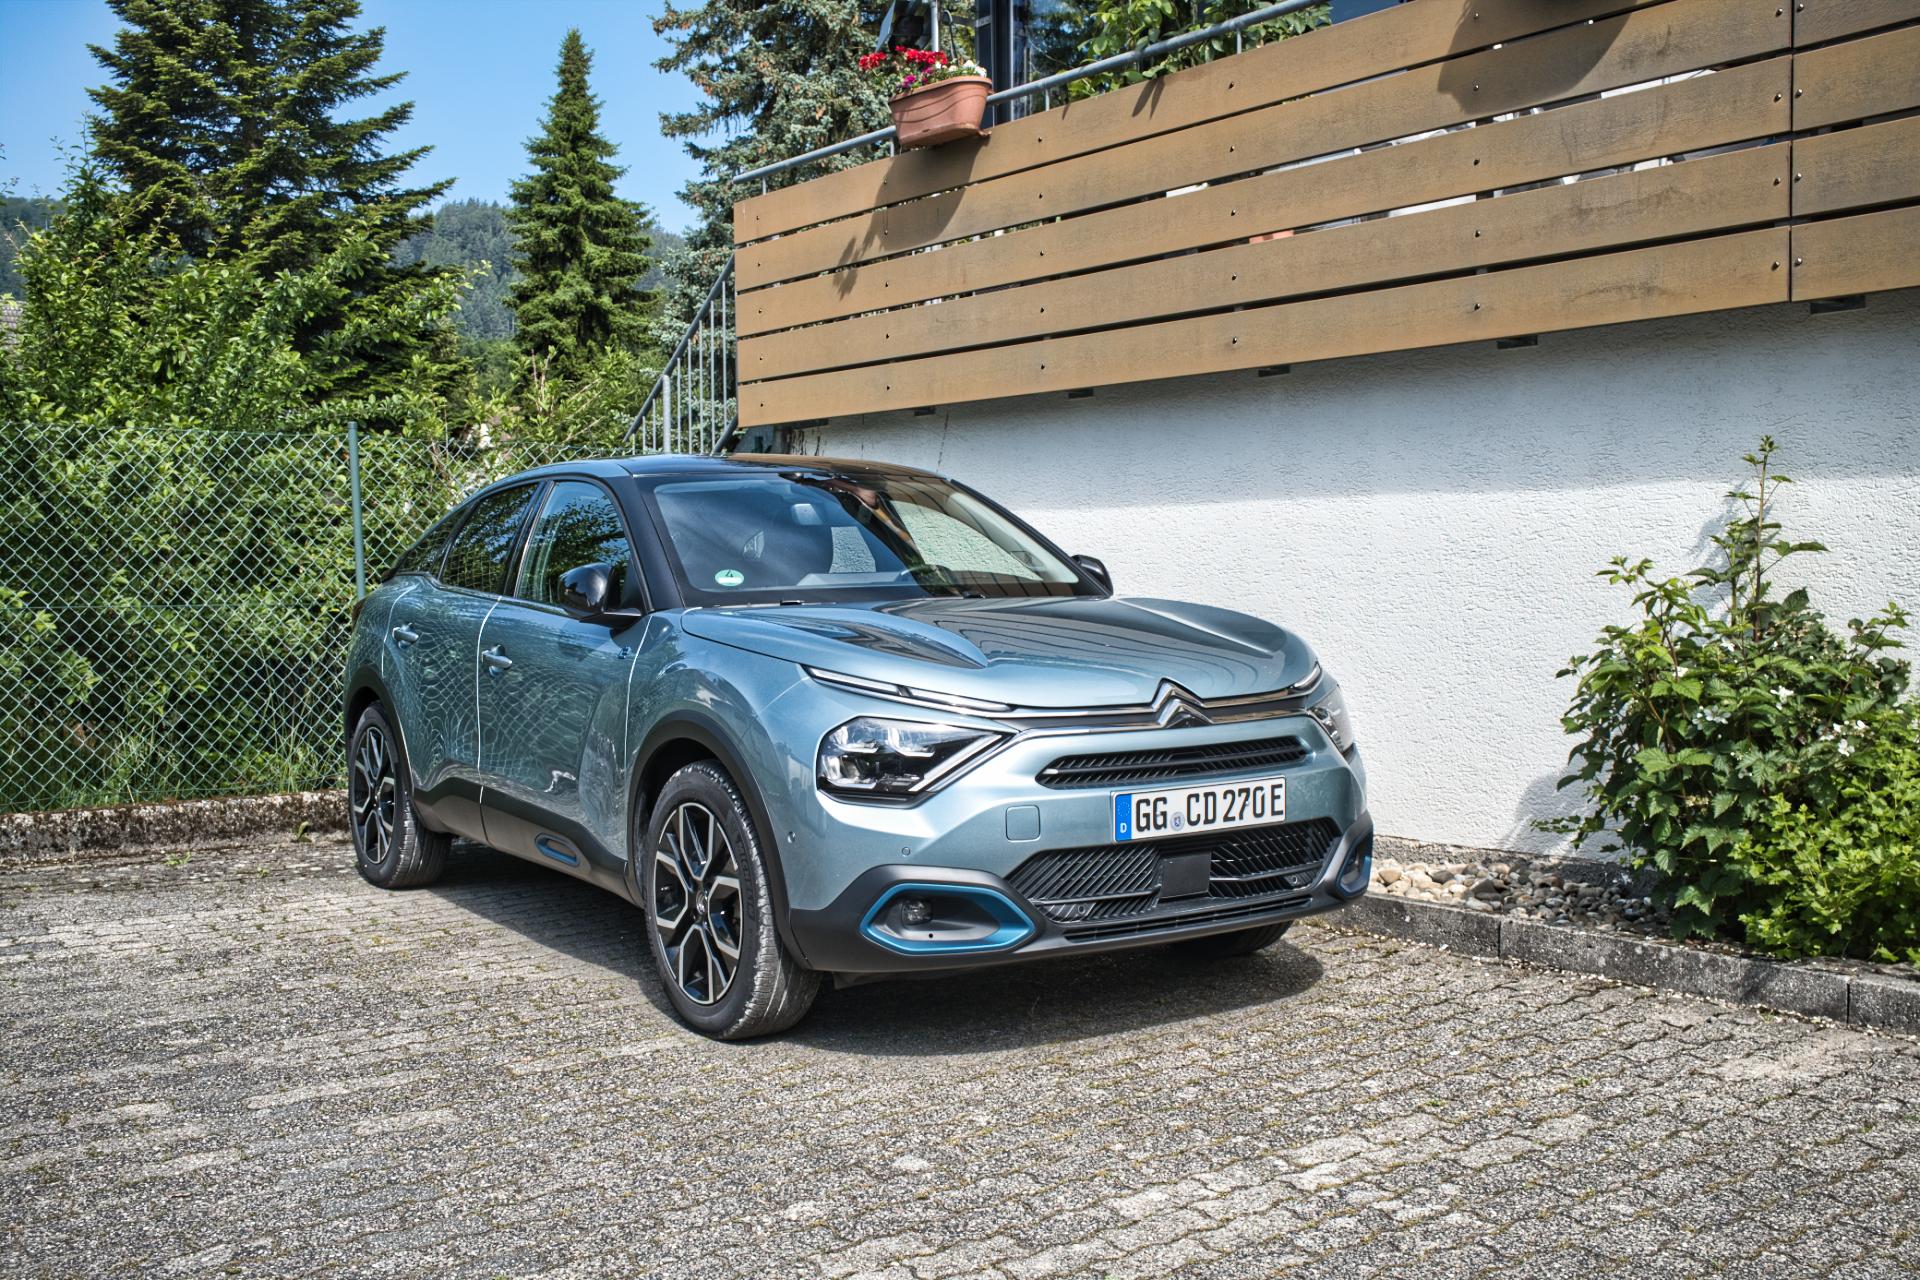 Citroën ë-C4: Test, Eindrücke & Erfahrungen aus dem Alltag